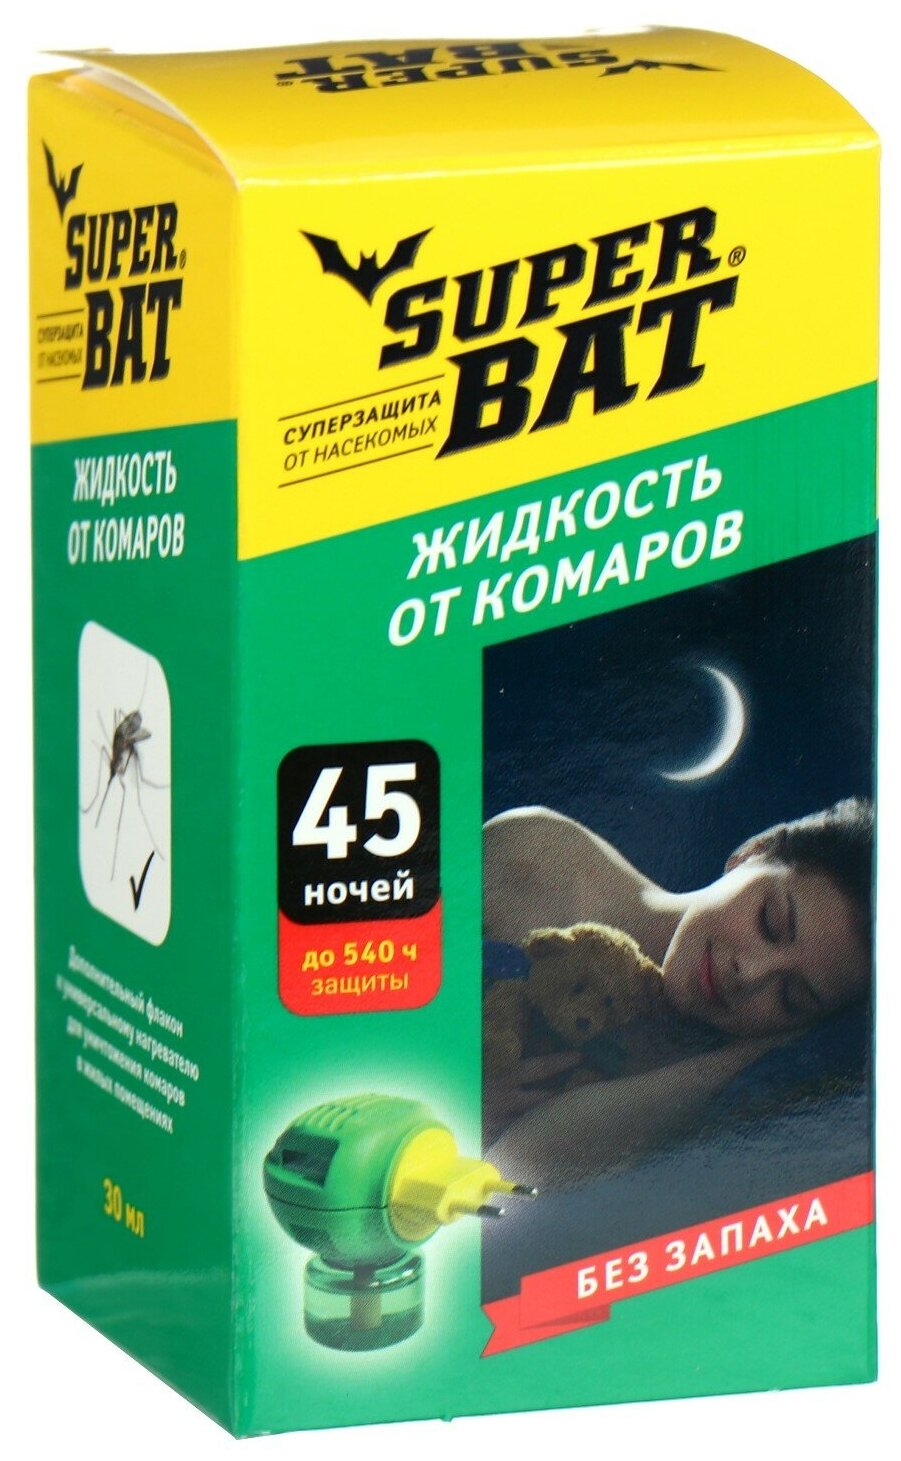 Дополнительный флакон-жидкость от комаров "SuperBAT " без запаха 45 ночей 30 мл